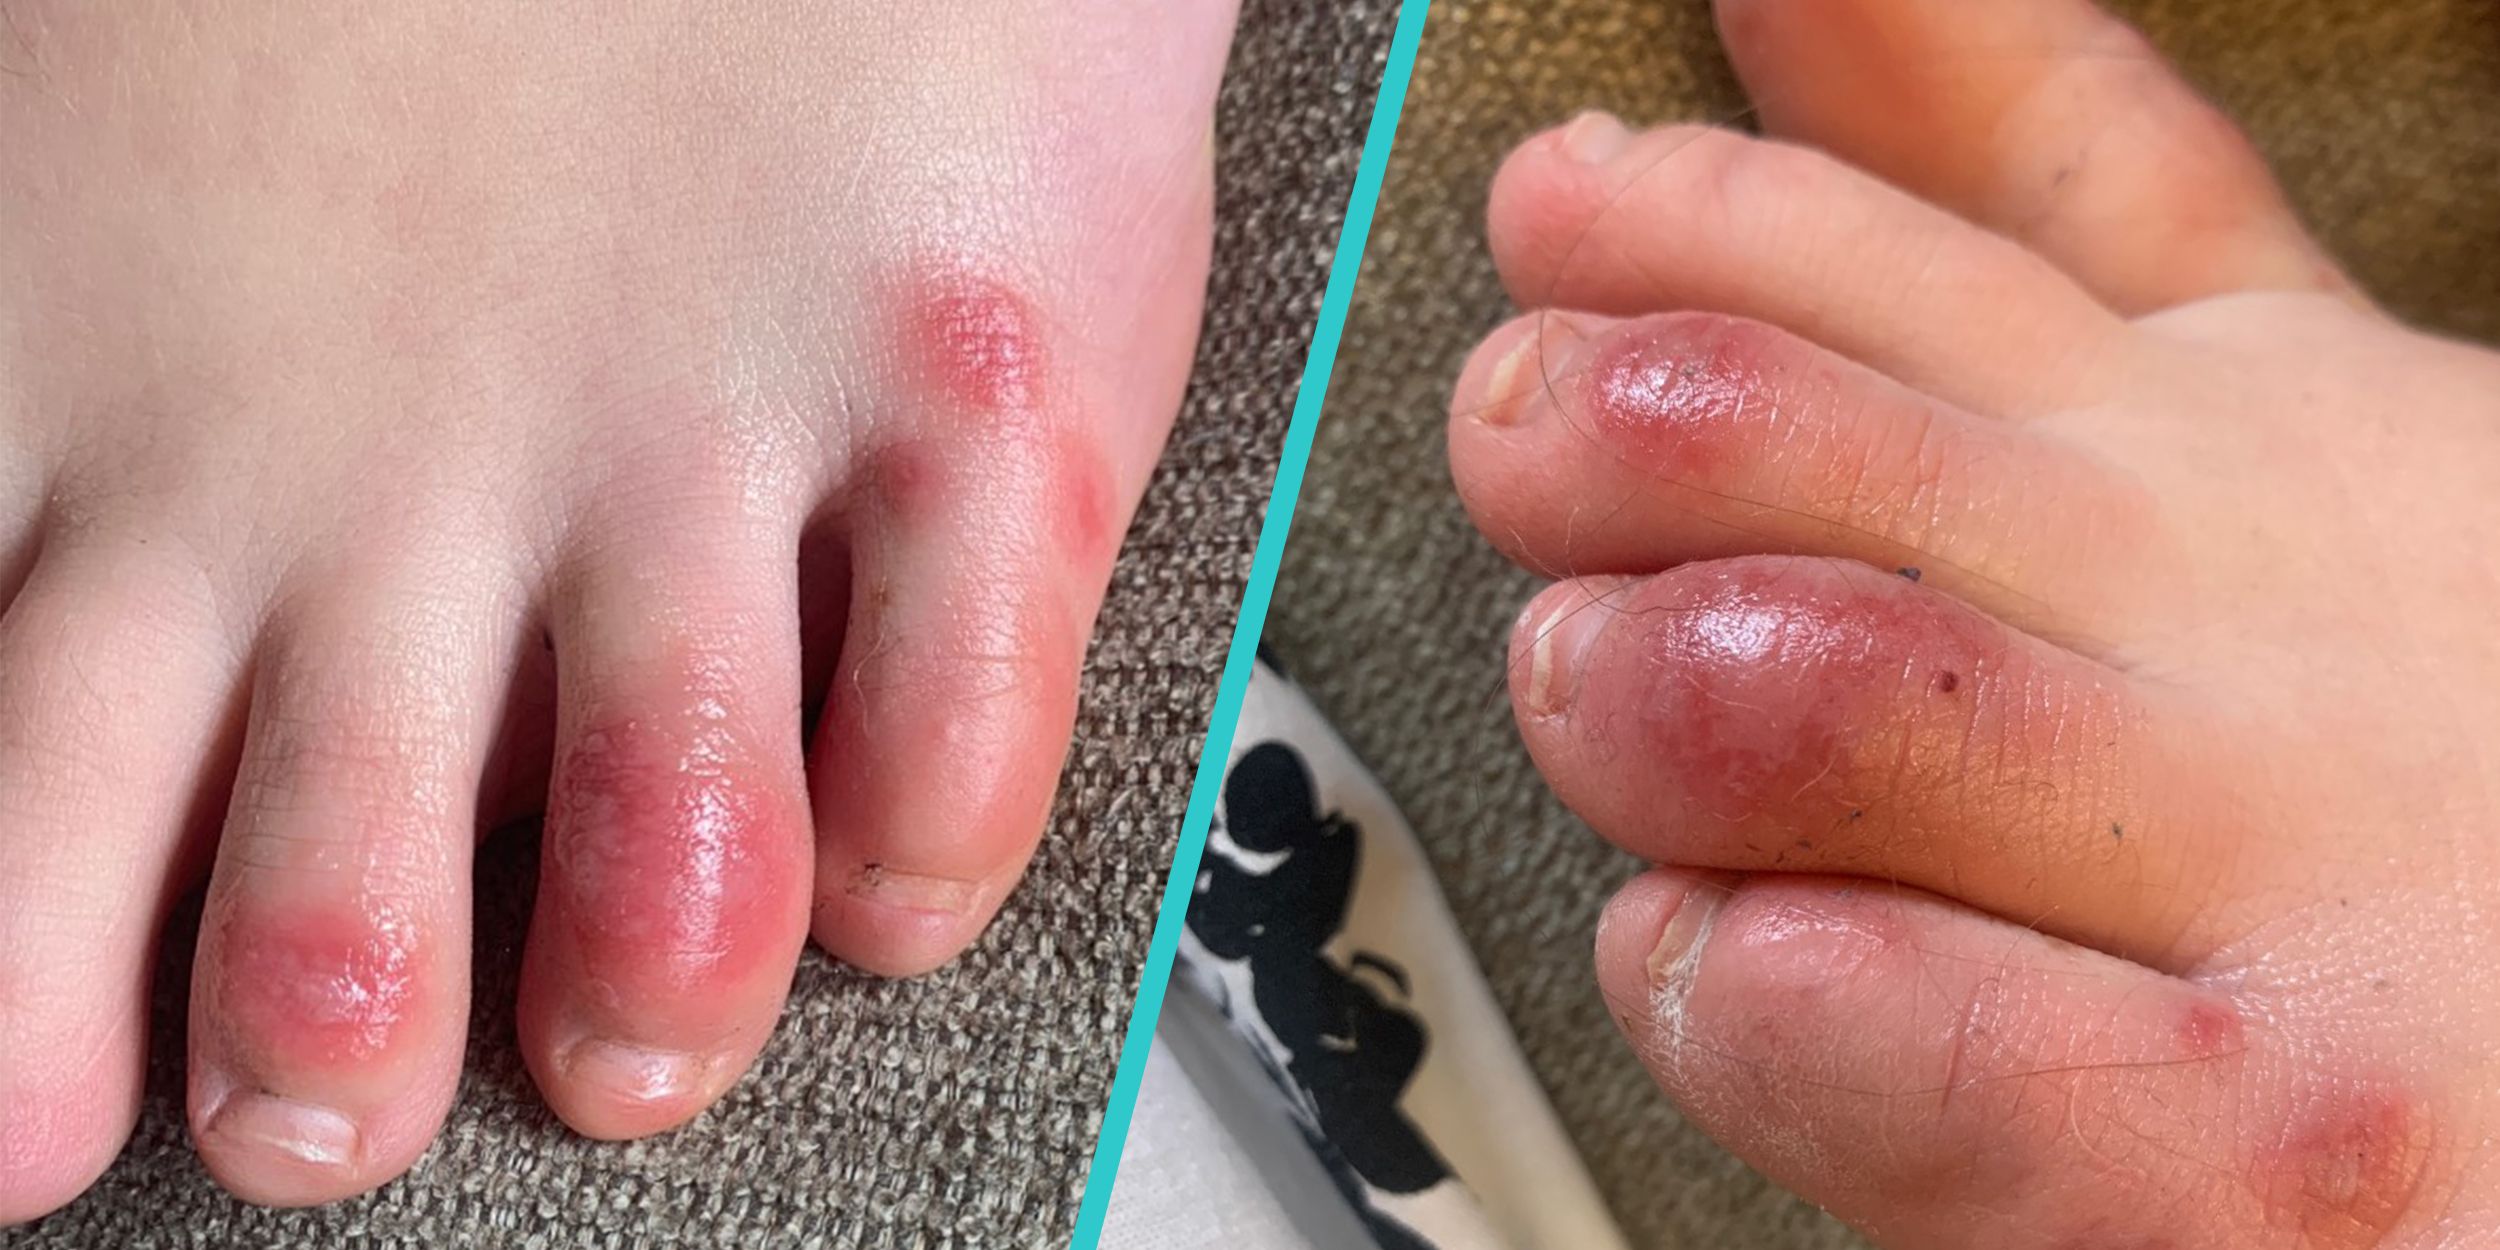 sore cracks between toes